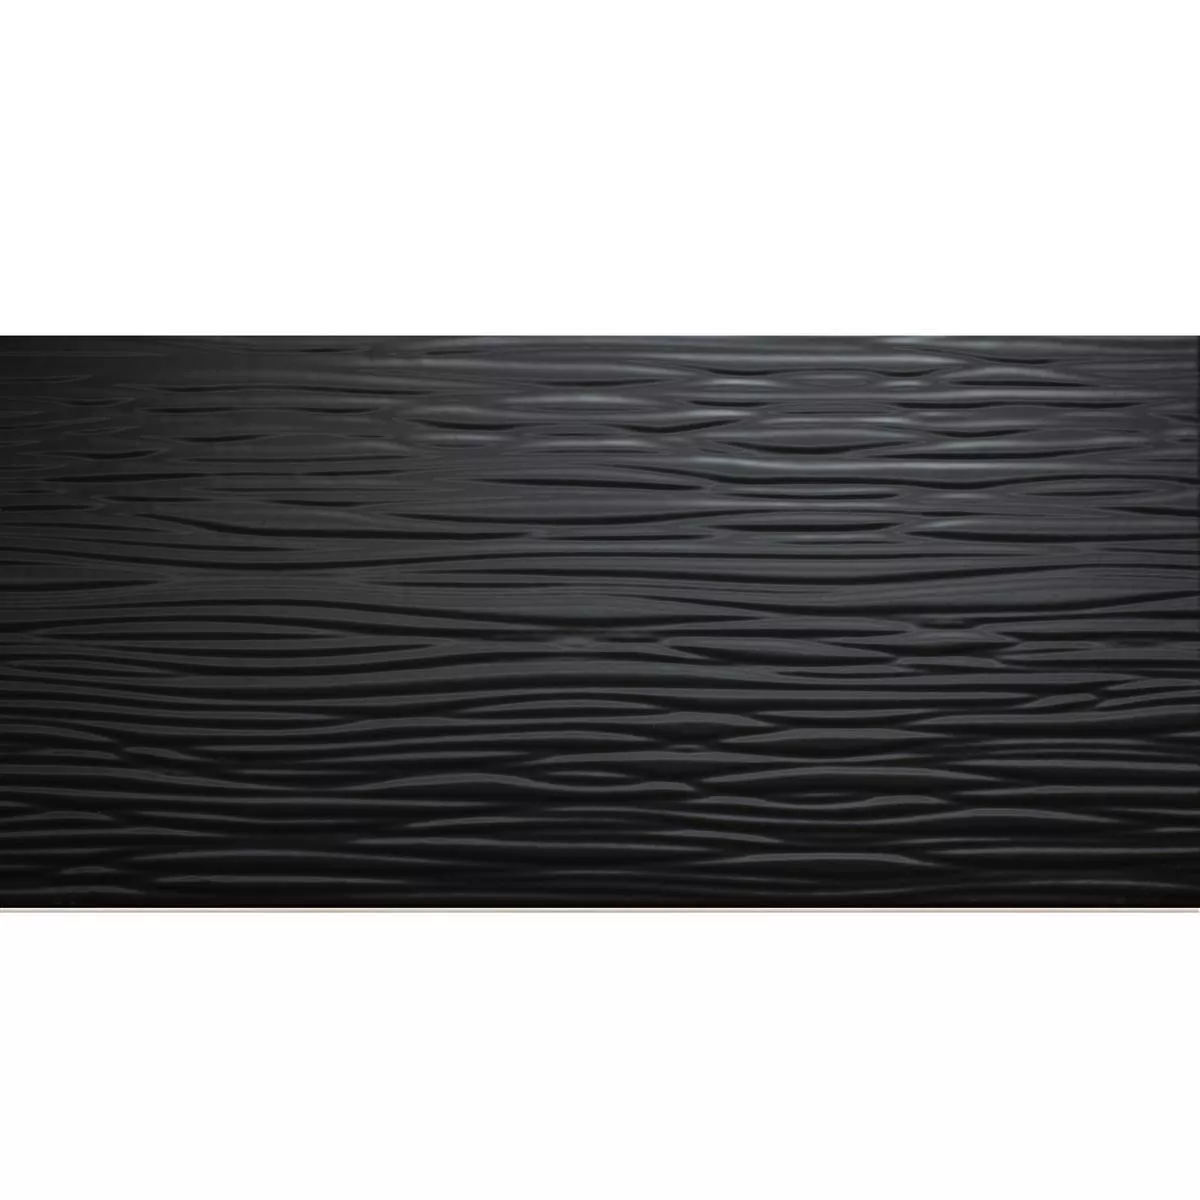 Próbka Płytki Ścienne Norway Strukturalny Błyszczący 25x50cm Czarny